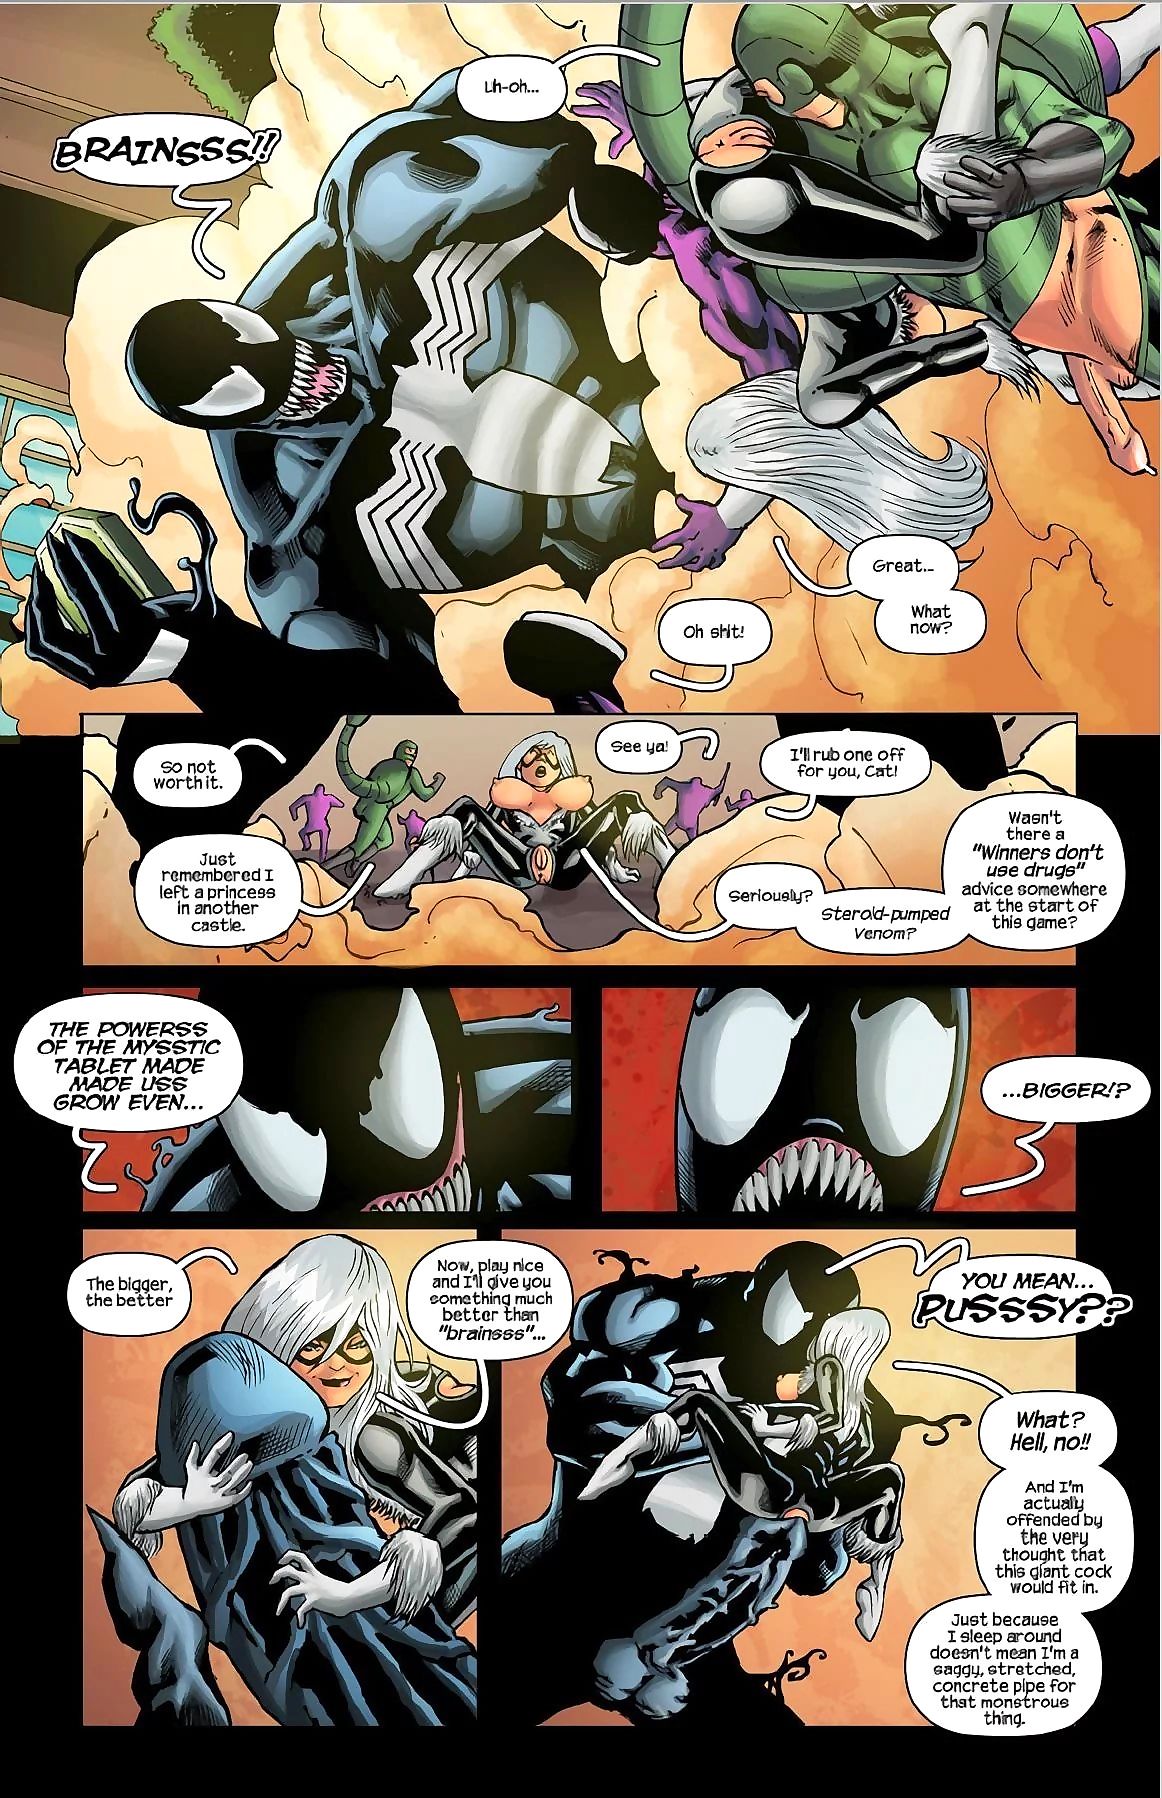 Tracy szufelki spiderman, w ’91 arcade Gra page 1